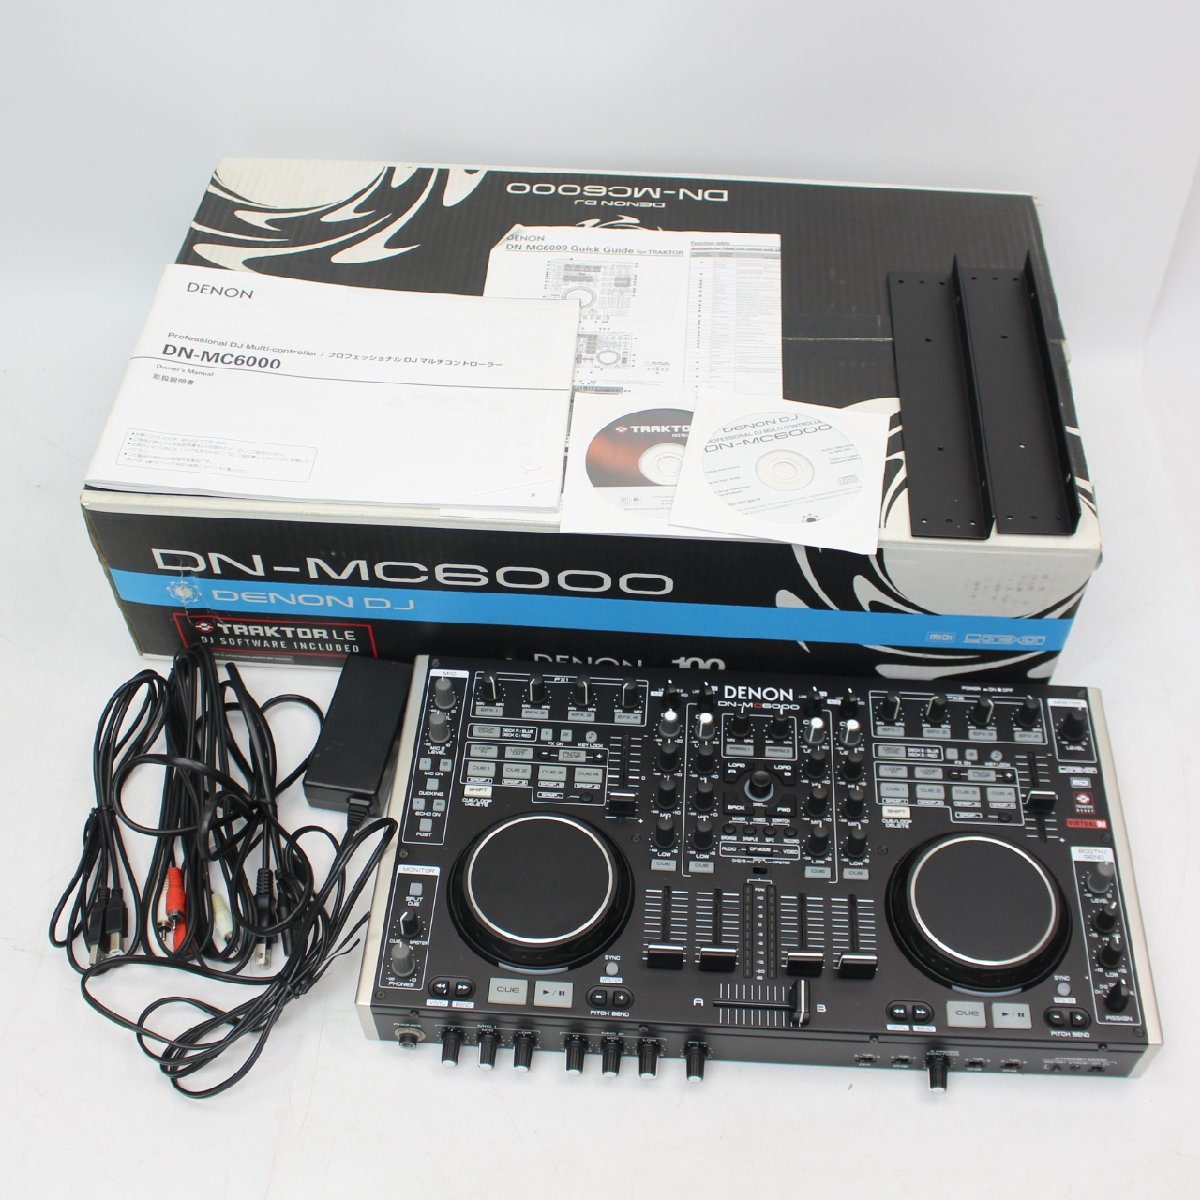 横浜市南区にて デノン プロ用 DJマルチコントローラー  DN-MC6000 2011年製 を出張買取させて頂きました。